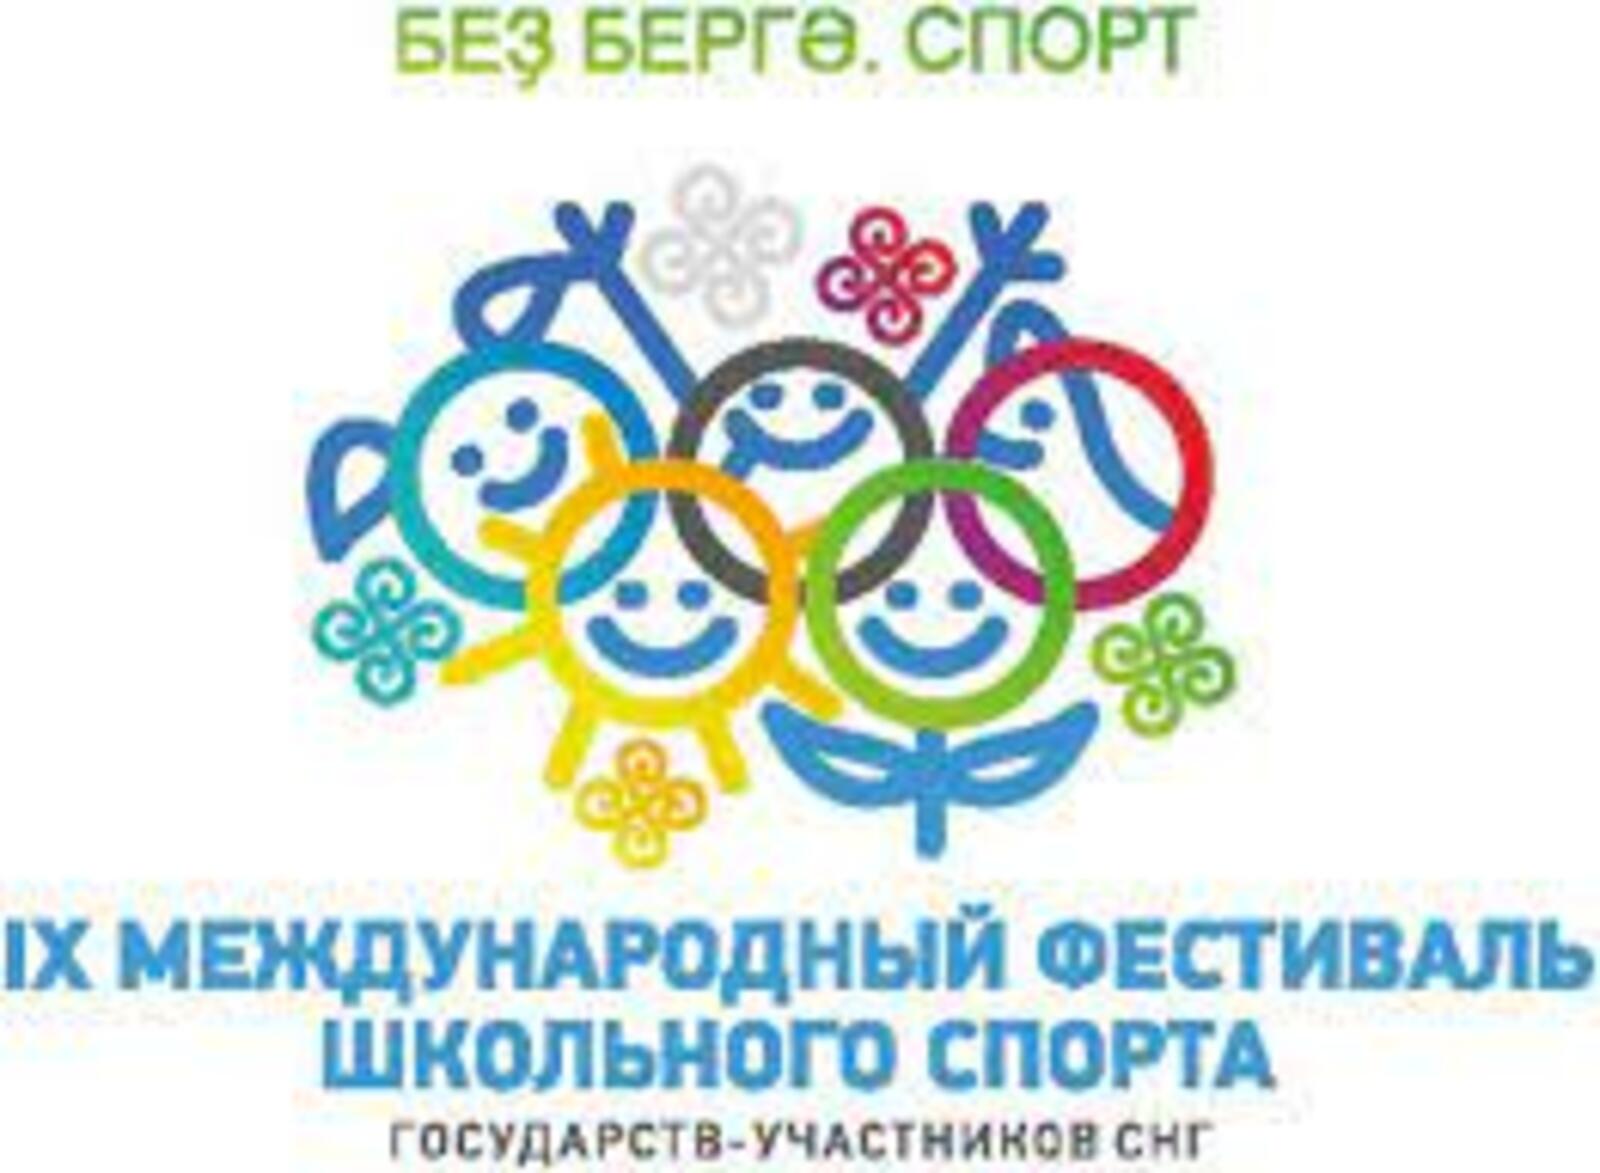 В Уфе пройдет IX международный фестиваль школьного спорта с участием стран СНГ